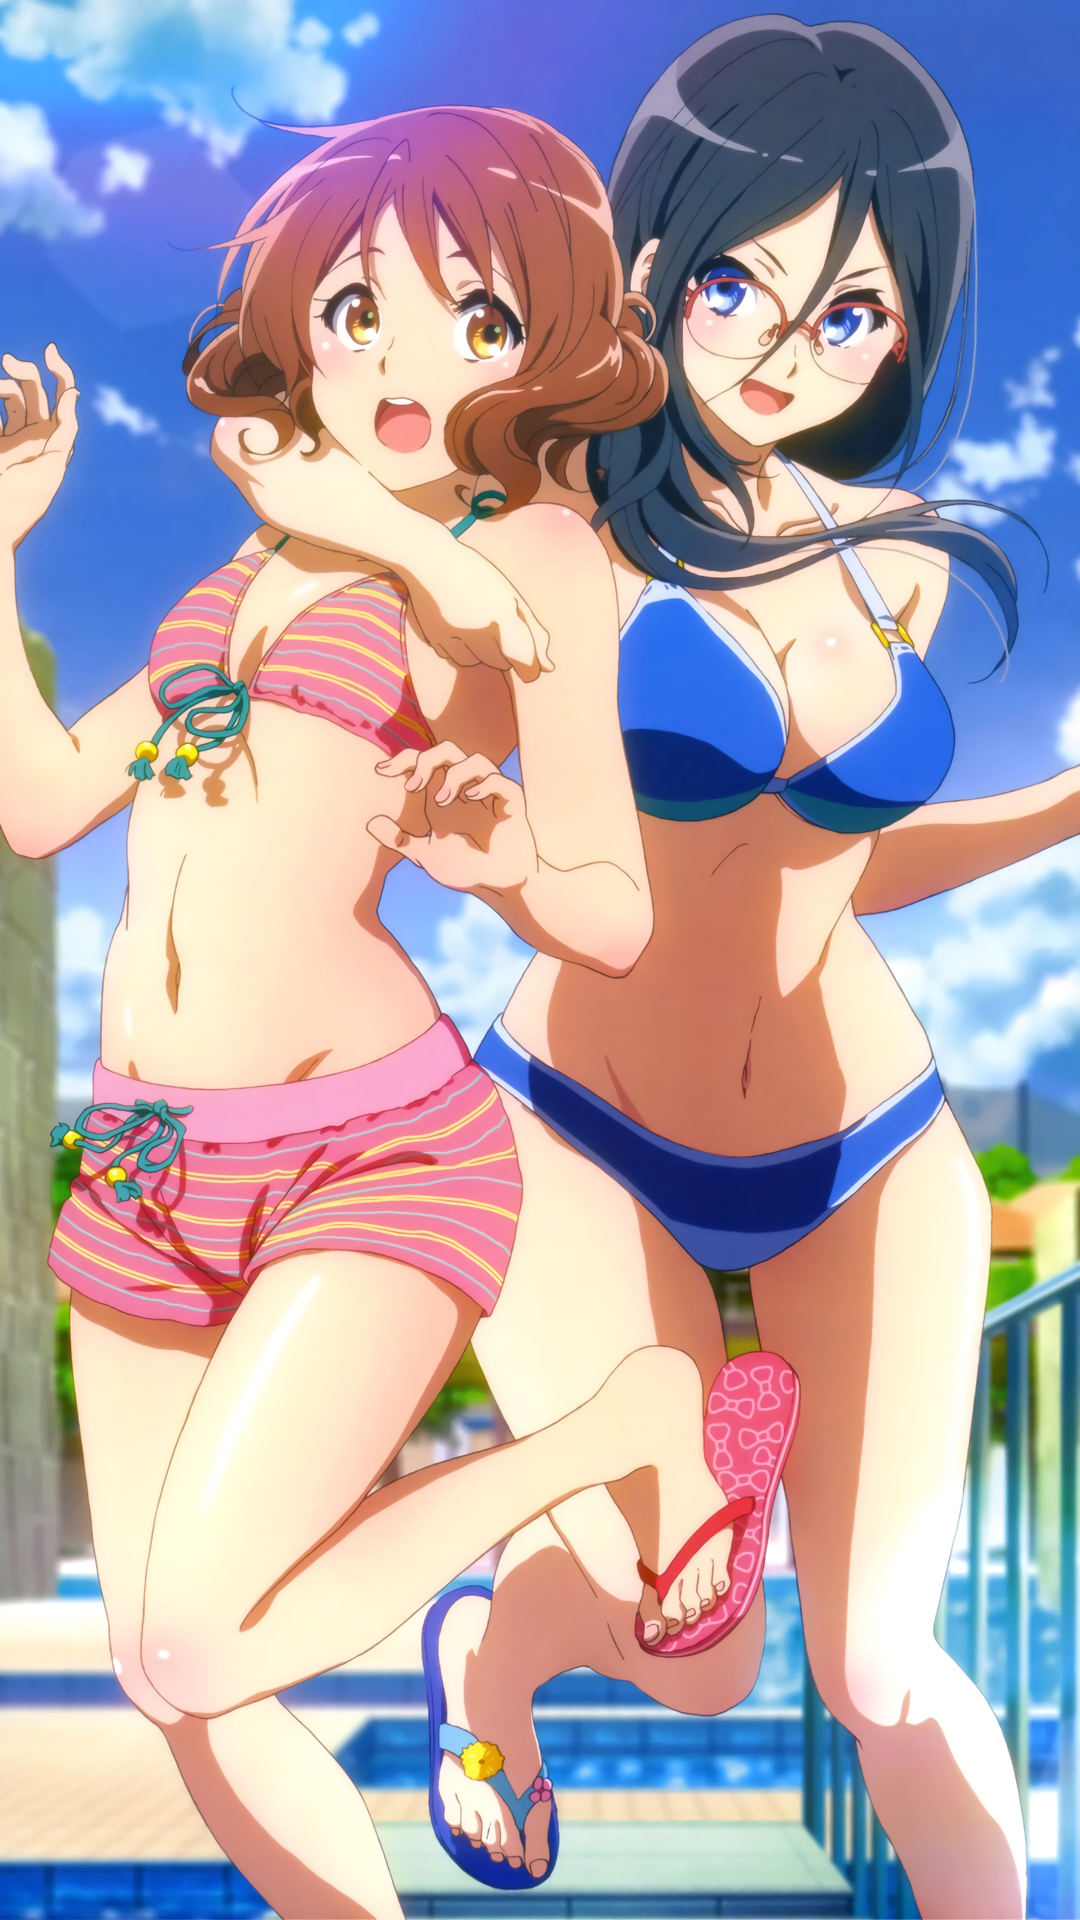 Anime 1080x1920 Oumae Kumiko Tanaka Asuka Hibike! Euphonium anime girls bikini cleavage glasses blue eyes swimming pool